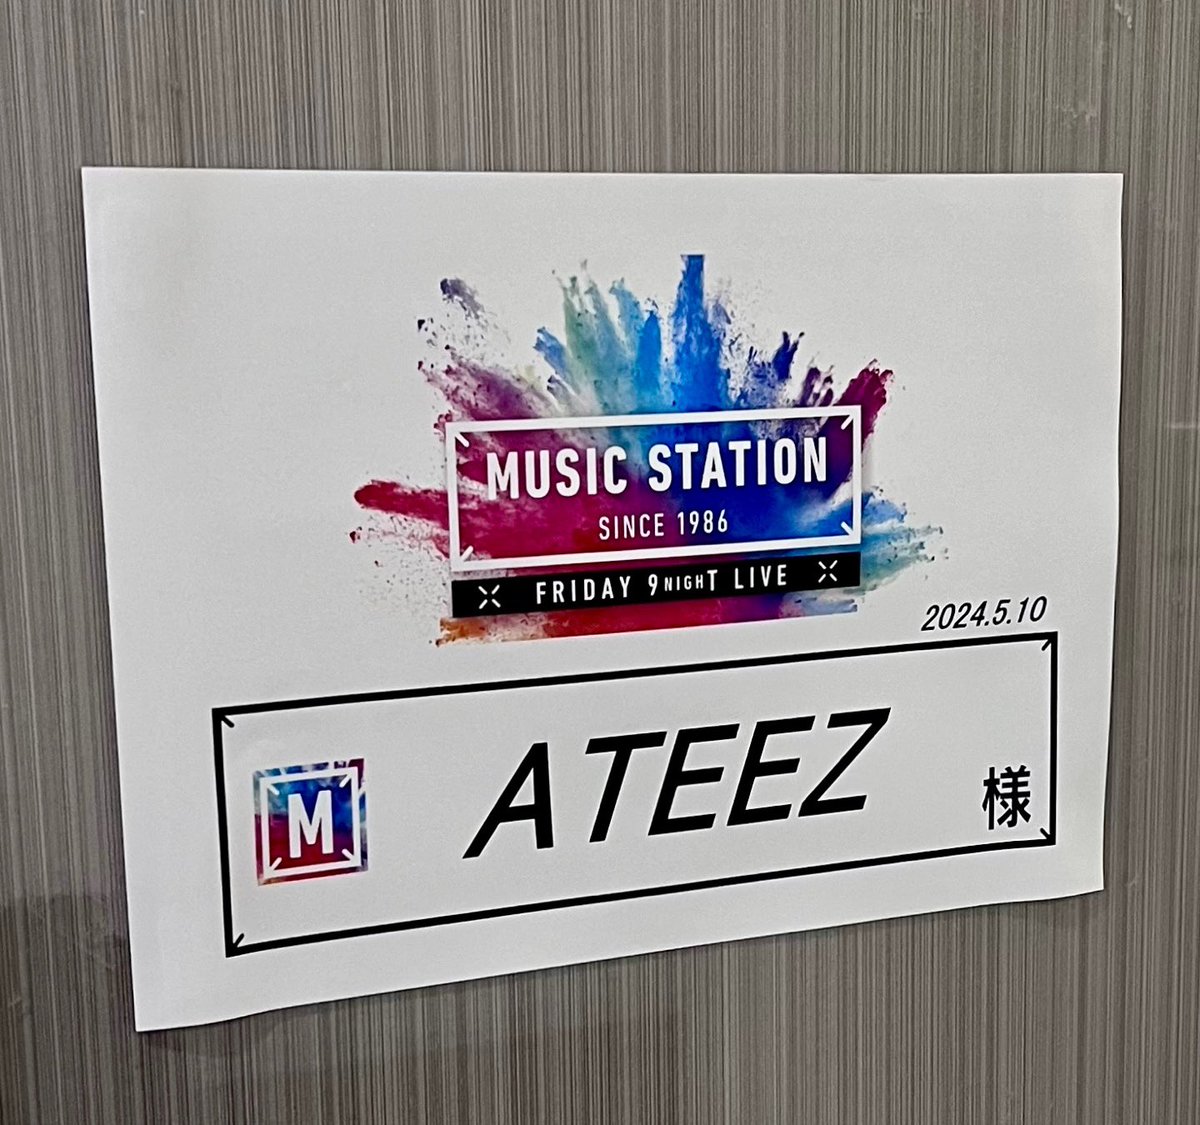 [📢] このあとよる9時からテレビ朝日系「ミュージックステーション」にATEEZが出演します✨ お楽しみに👀💕 @Mst_com #Mステ #ATEEZ #에이티즈 #エイティーズ